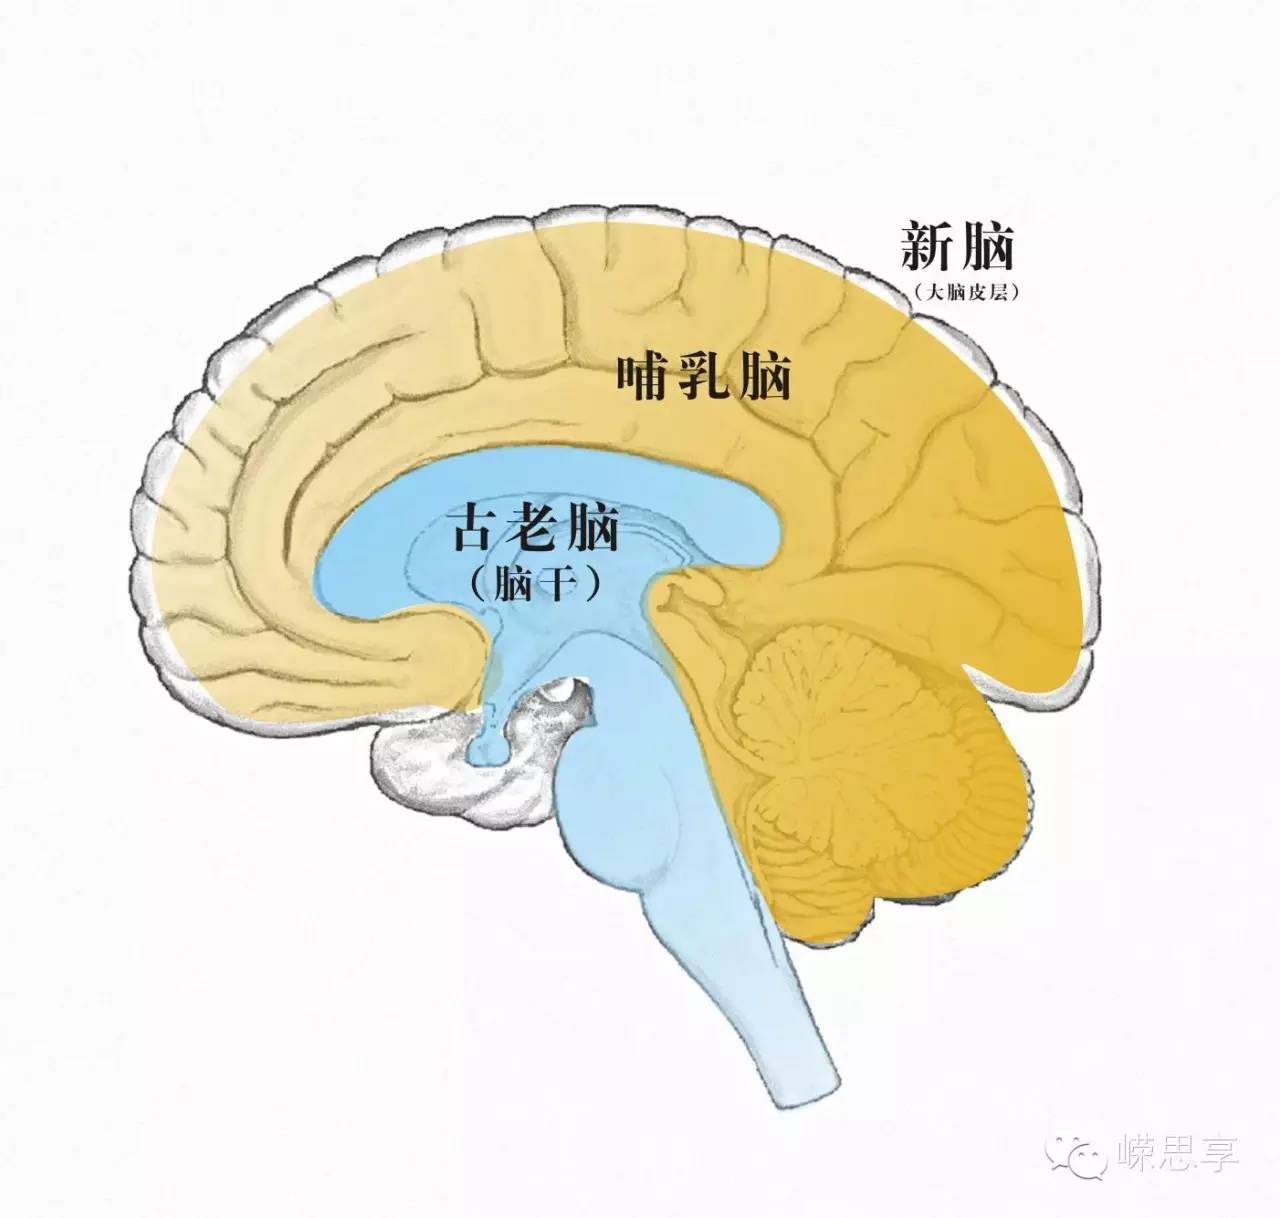 他将这三个脑分别称作新皮质或新哺乳动物脑,边缘系统或古哺乳动物脑